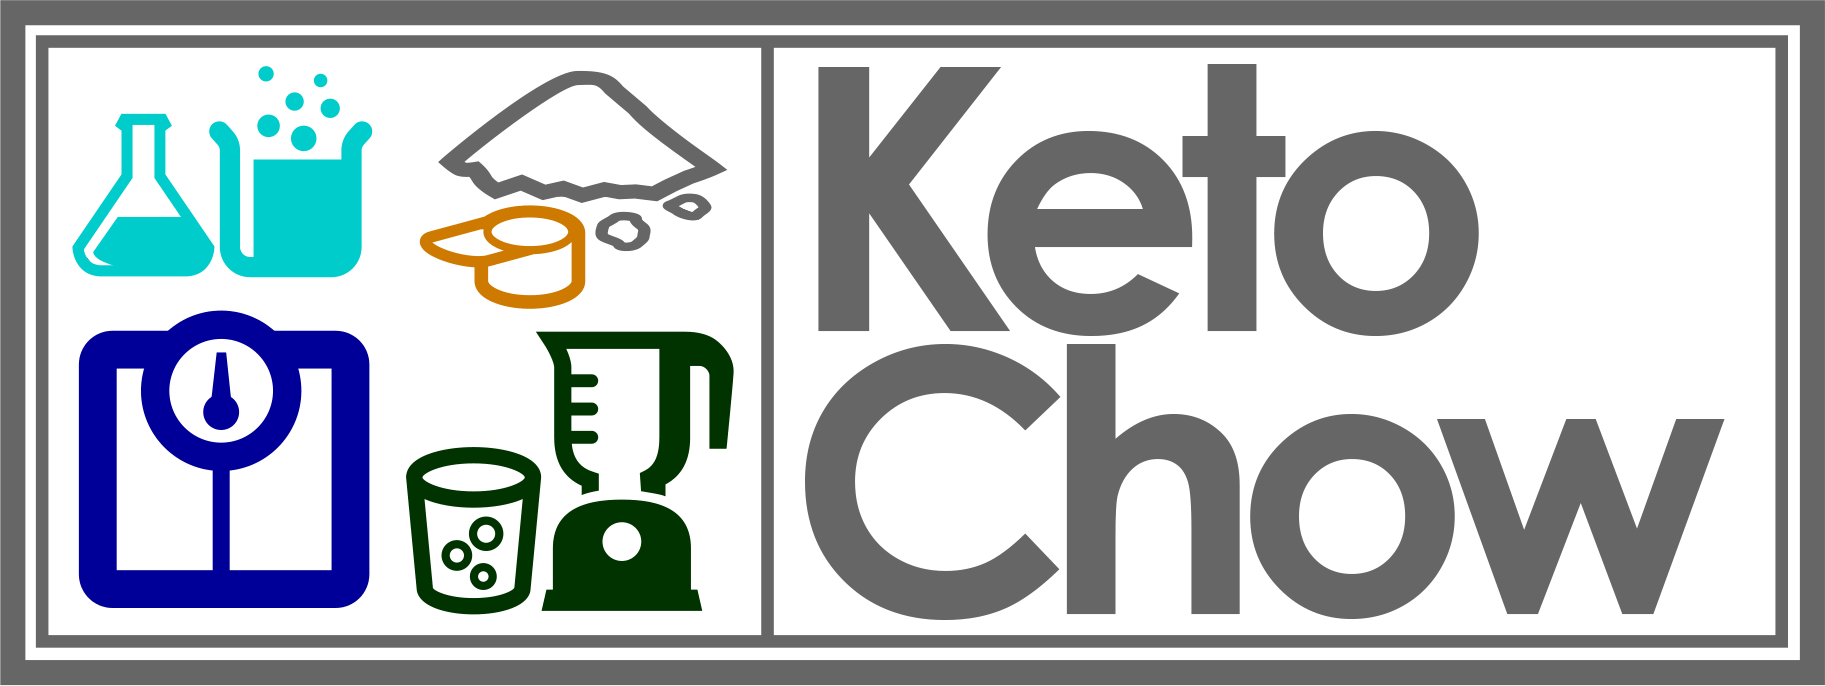 Keto Chow. Make keto easy